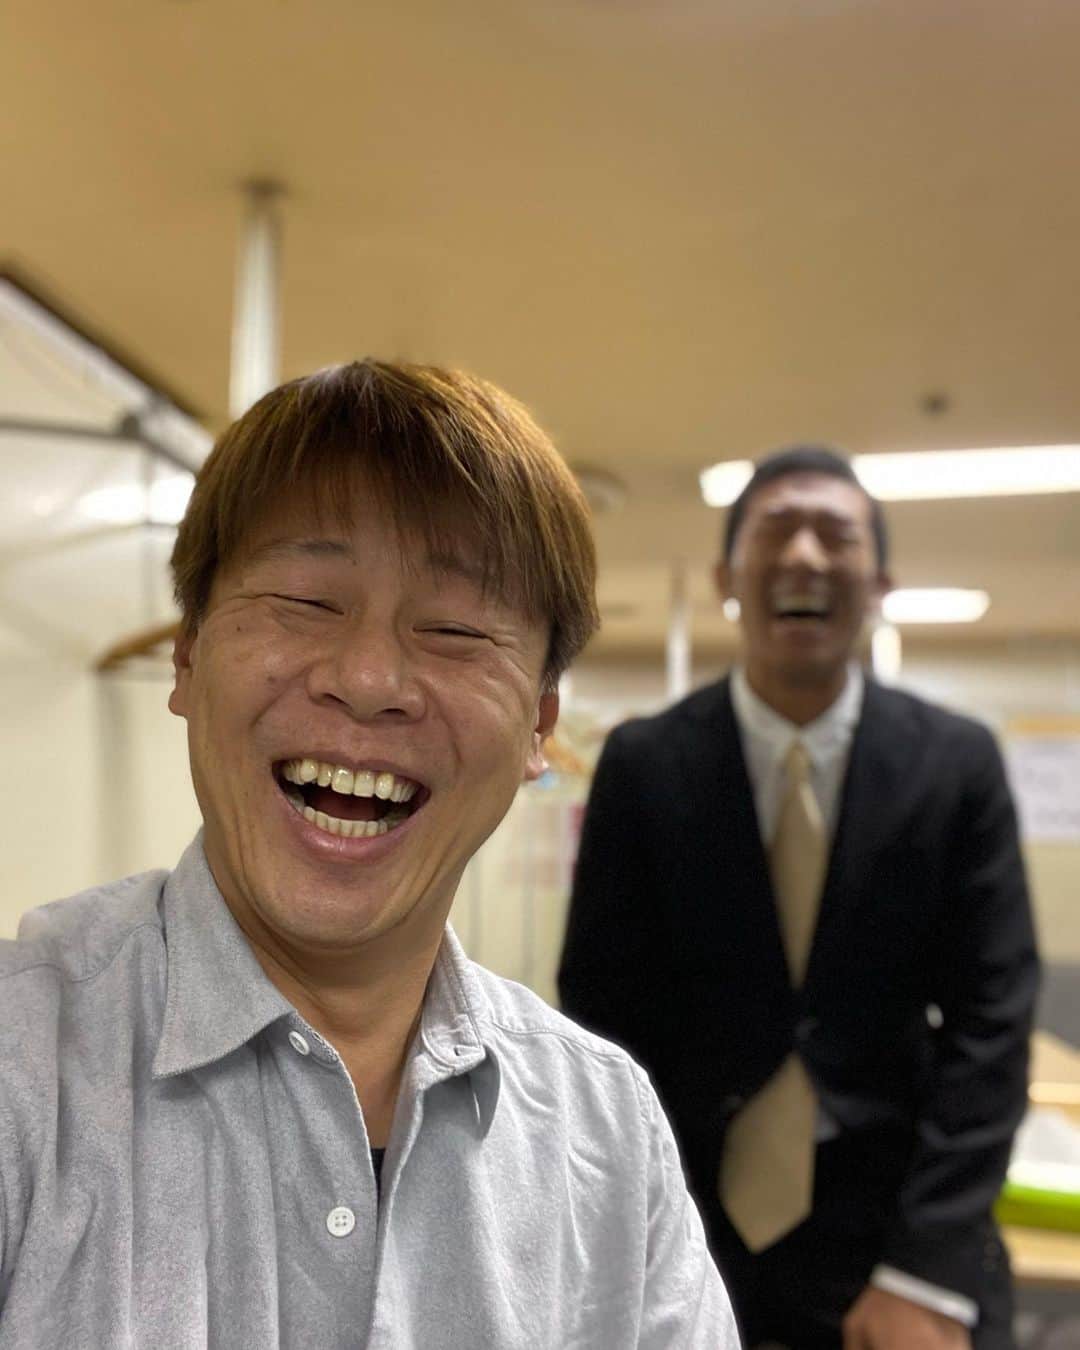 ロッシーさんのインスタグラム写真 ロッシーinstagram 麒麟田村 が Instagramでやってる全力笑顔 に 参加出来て光栄です せっかくなんで 僕の全力笑顔に参加してもらいました ありがとう田村 詳しくは 麒麟田村instagram Hiroshi9393 を 見てね 今日